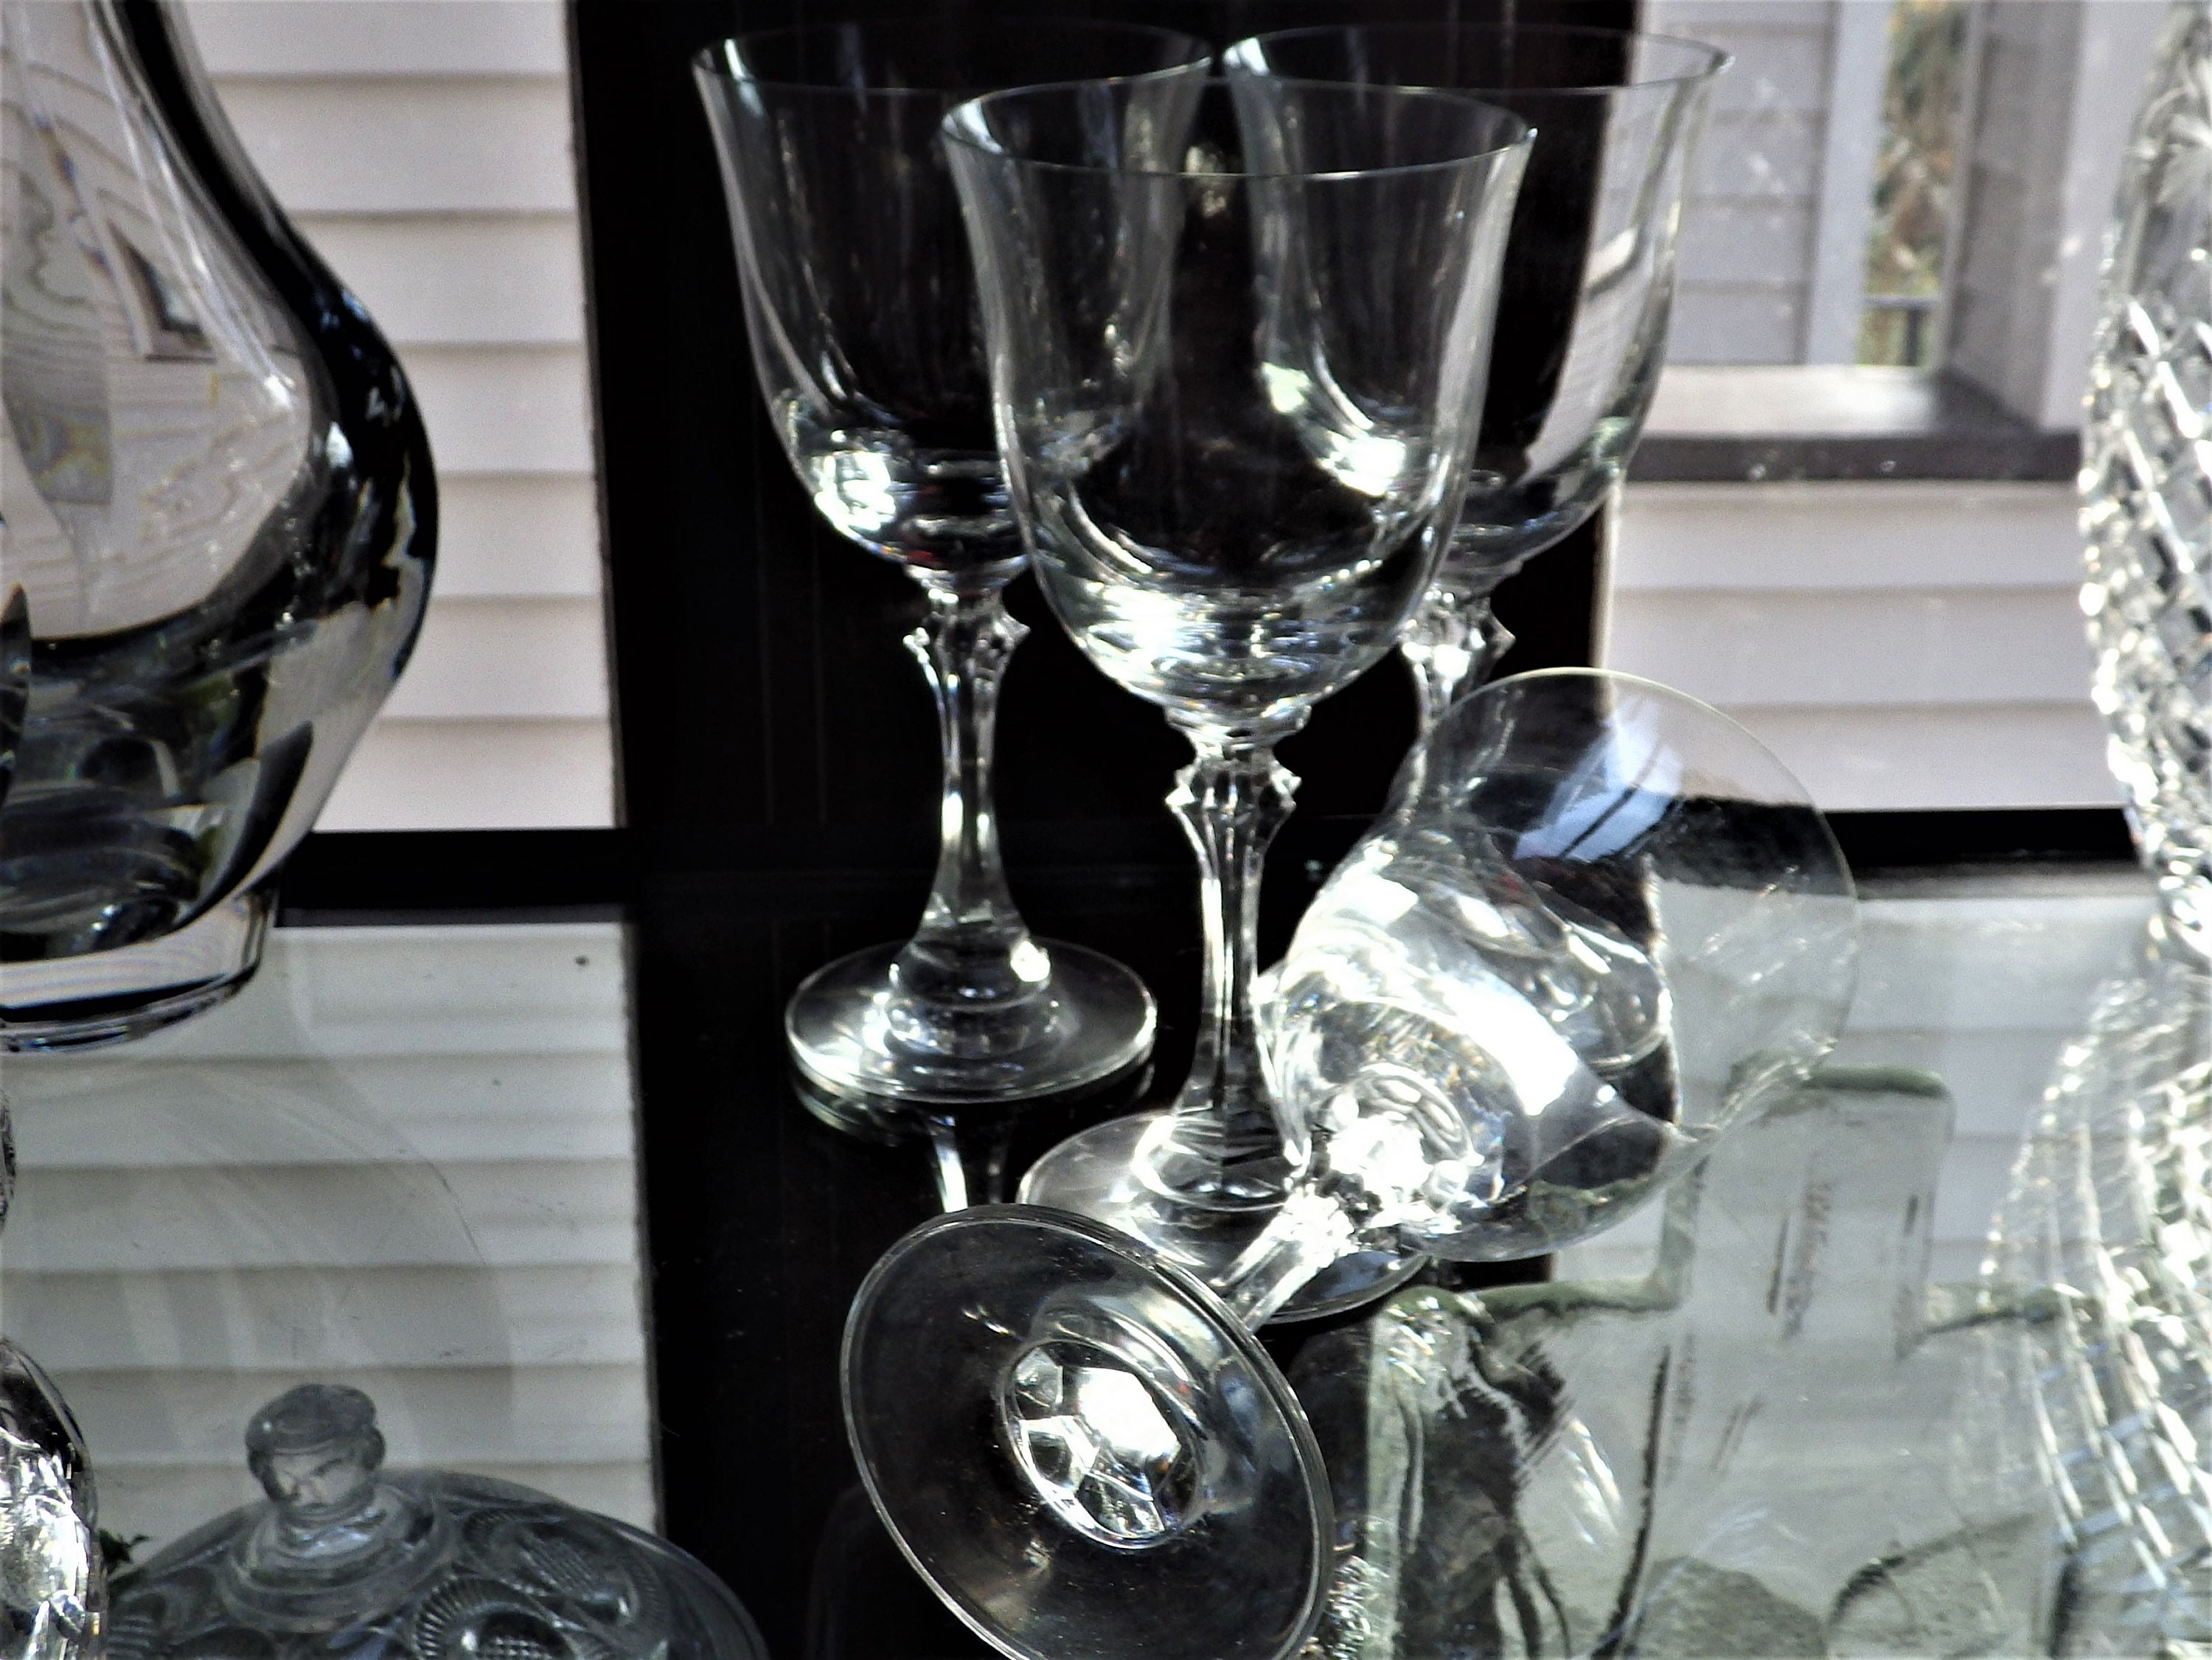 Set of Six Vintage Crystal Stemmed Wine Glasses, Barware Glasses, Crystal  Stemware, Water Glasses, Drinking Glasses, Bar Deco 